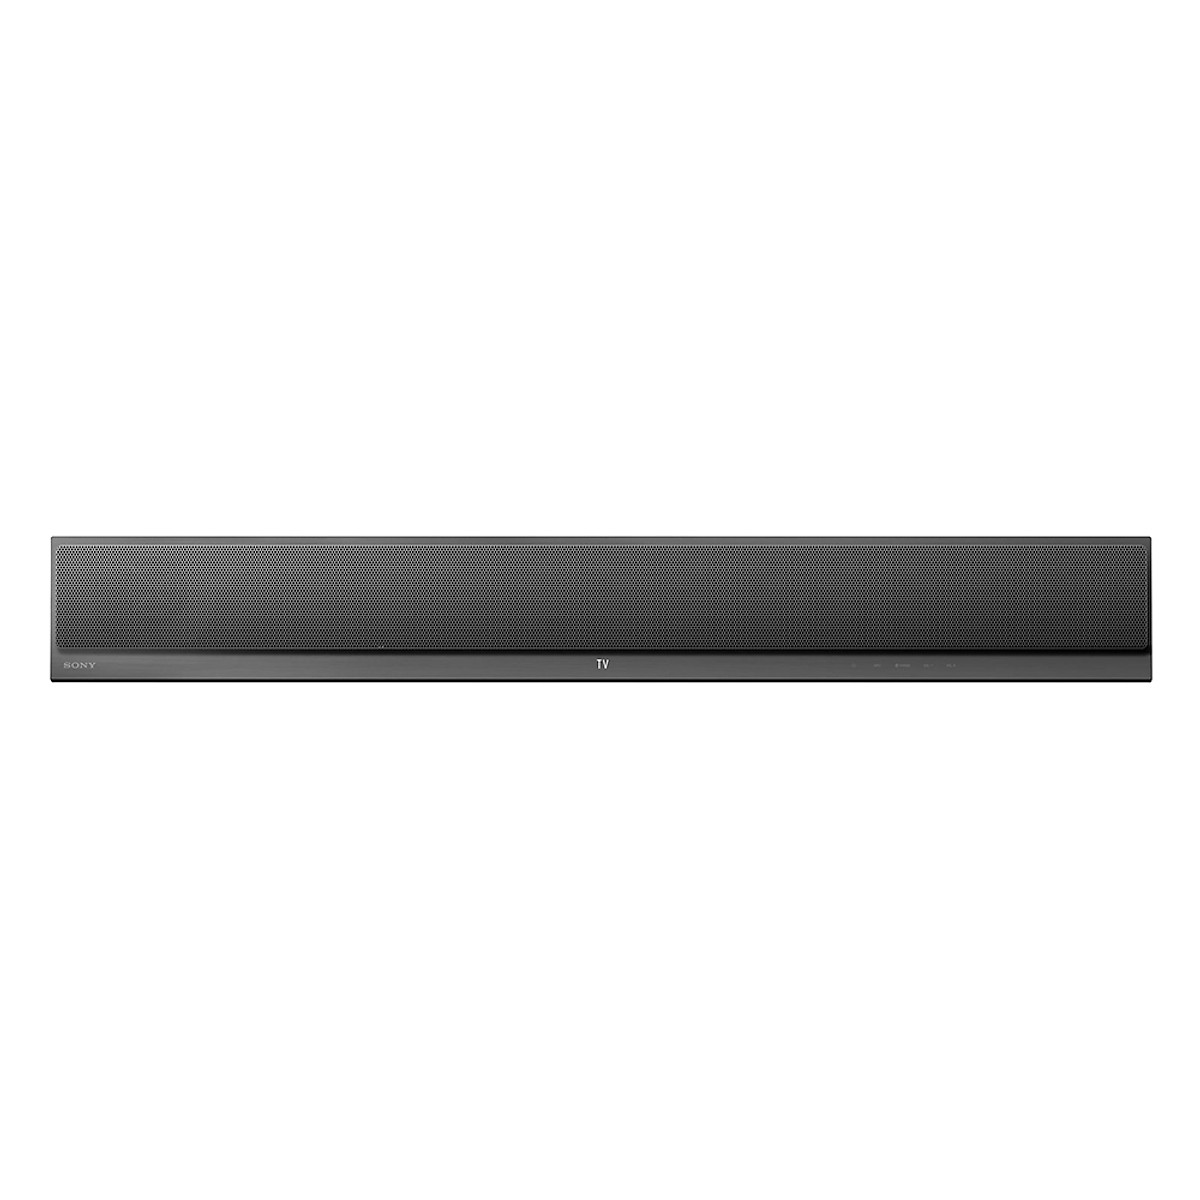 Loa thanh soundbar Sony 2.1 HT-CT390 - Hàng chính hãng